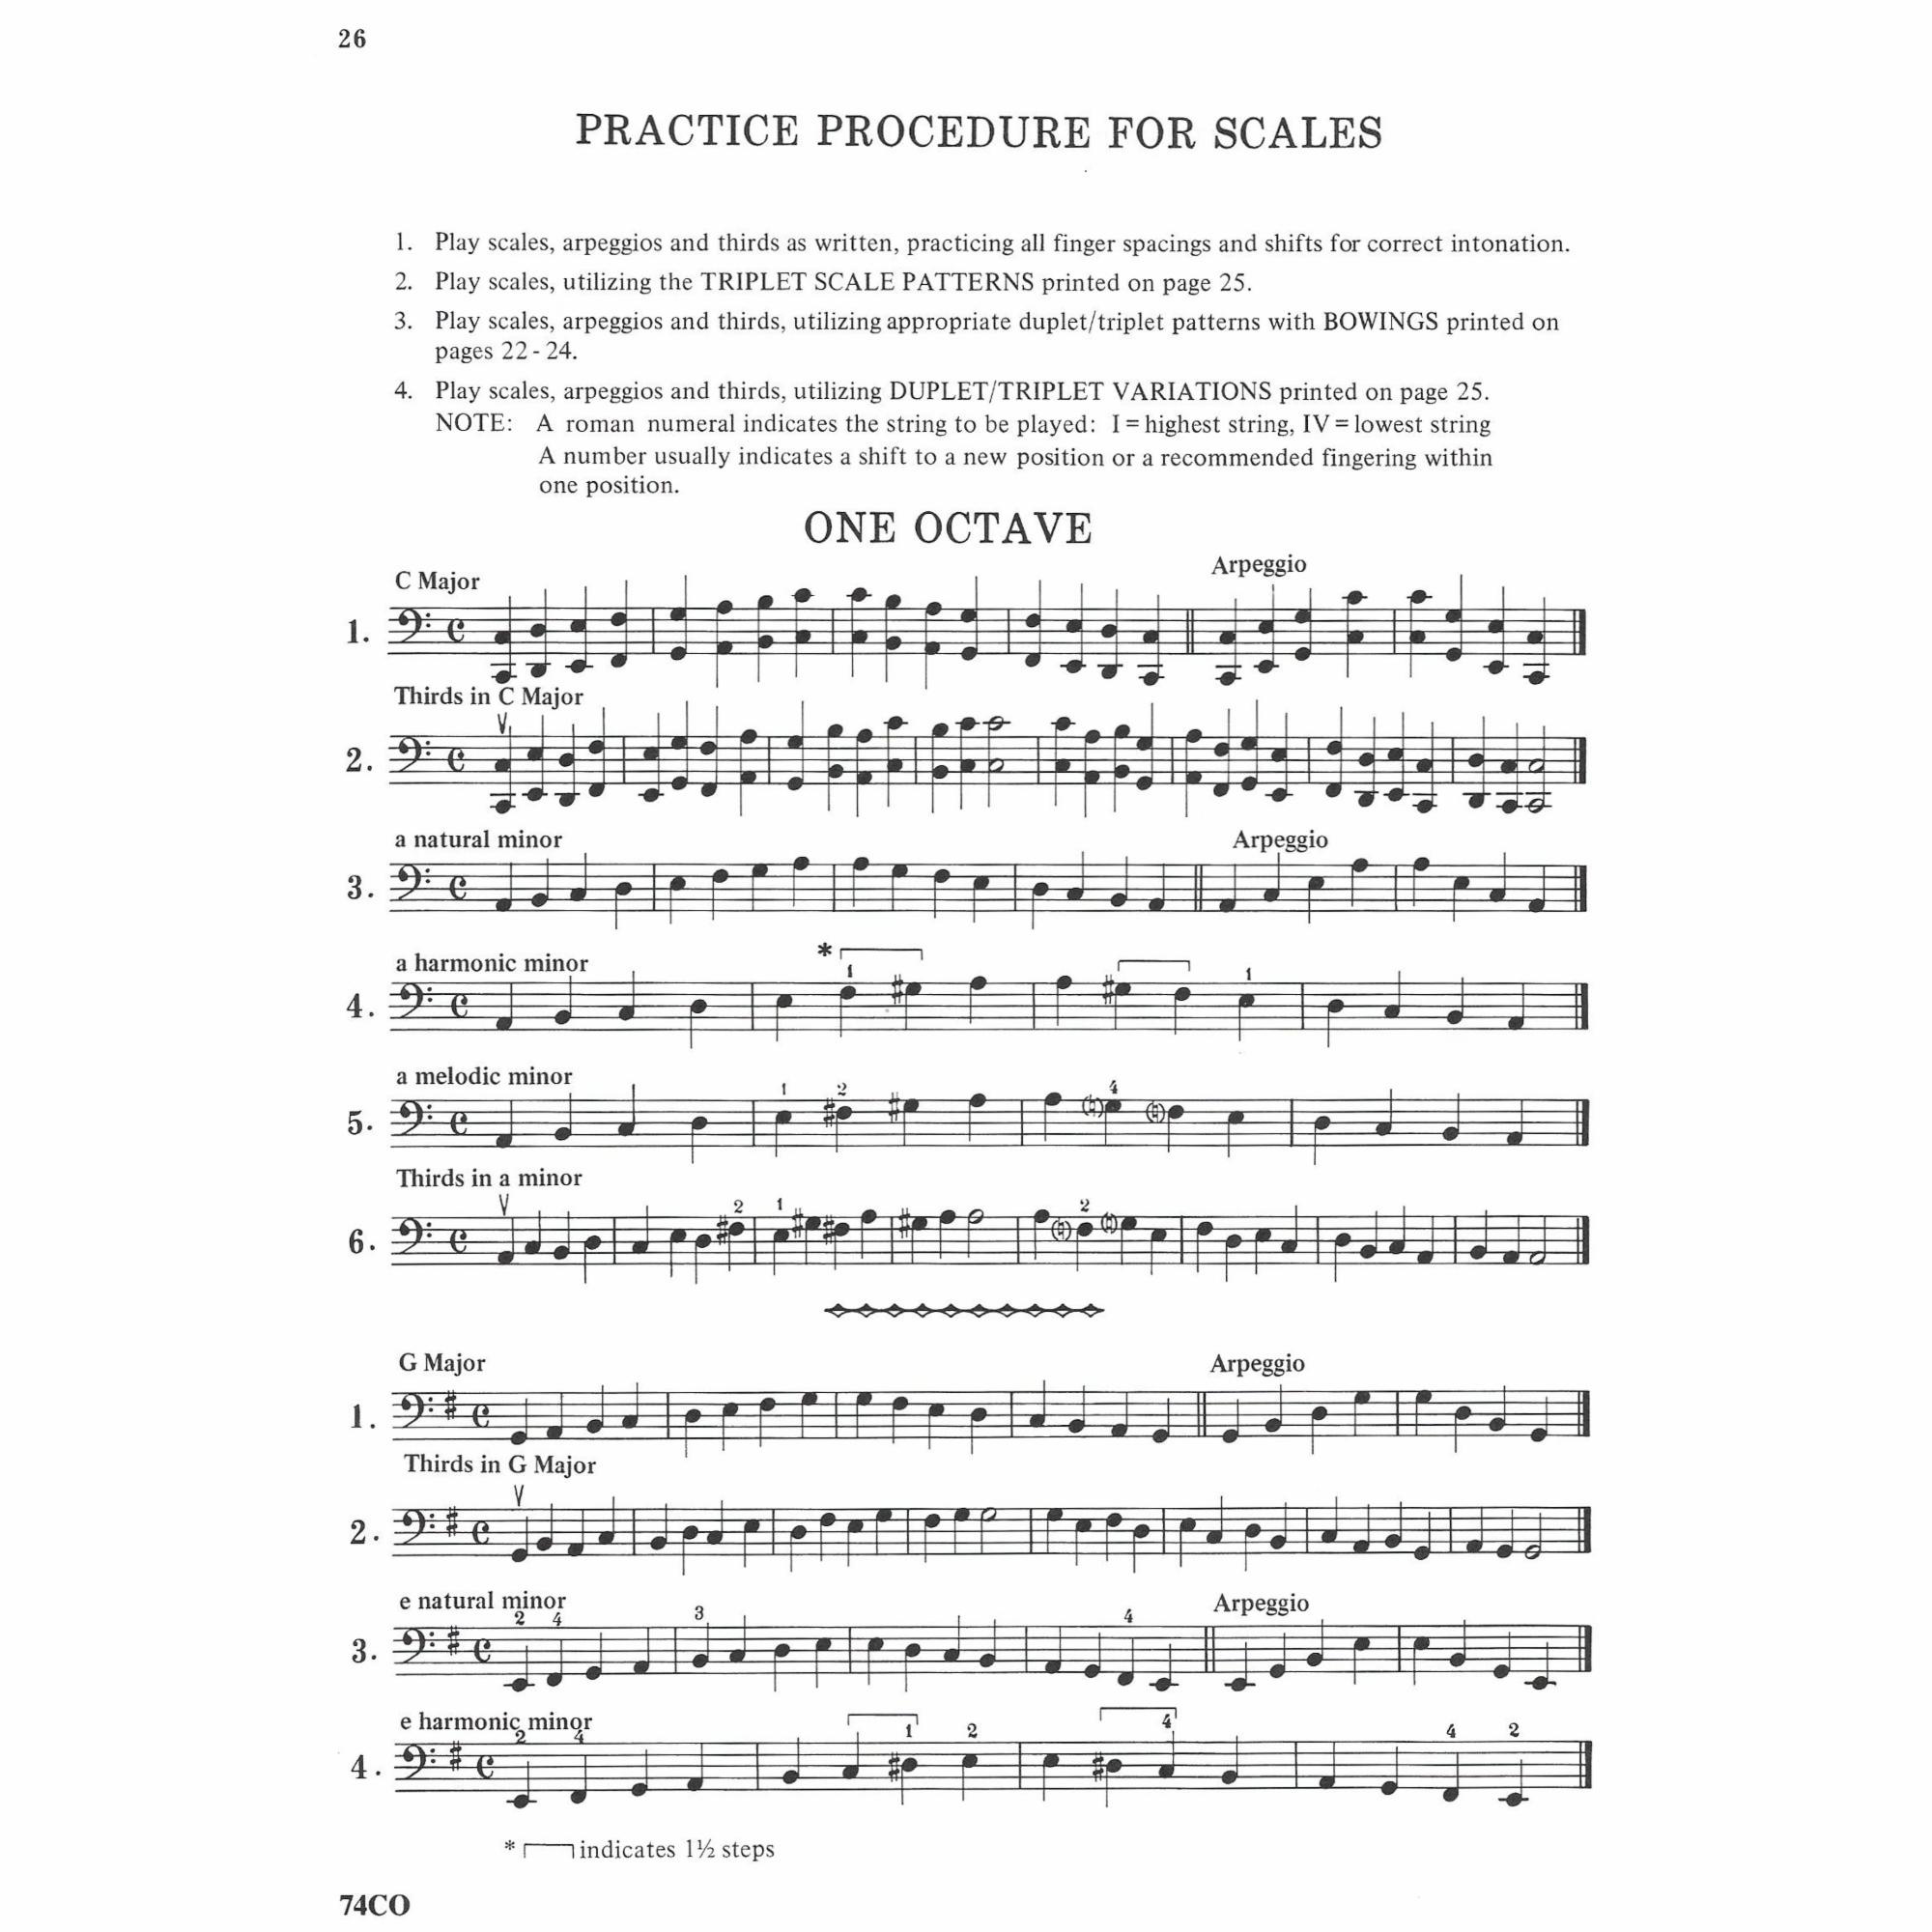 Sample: Cello (Pg. 26)